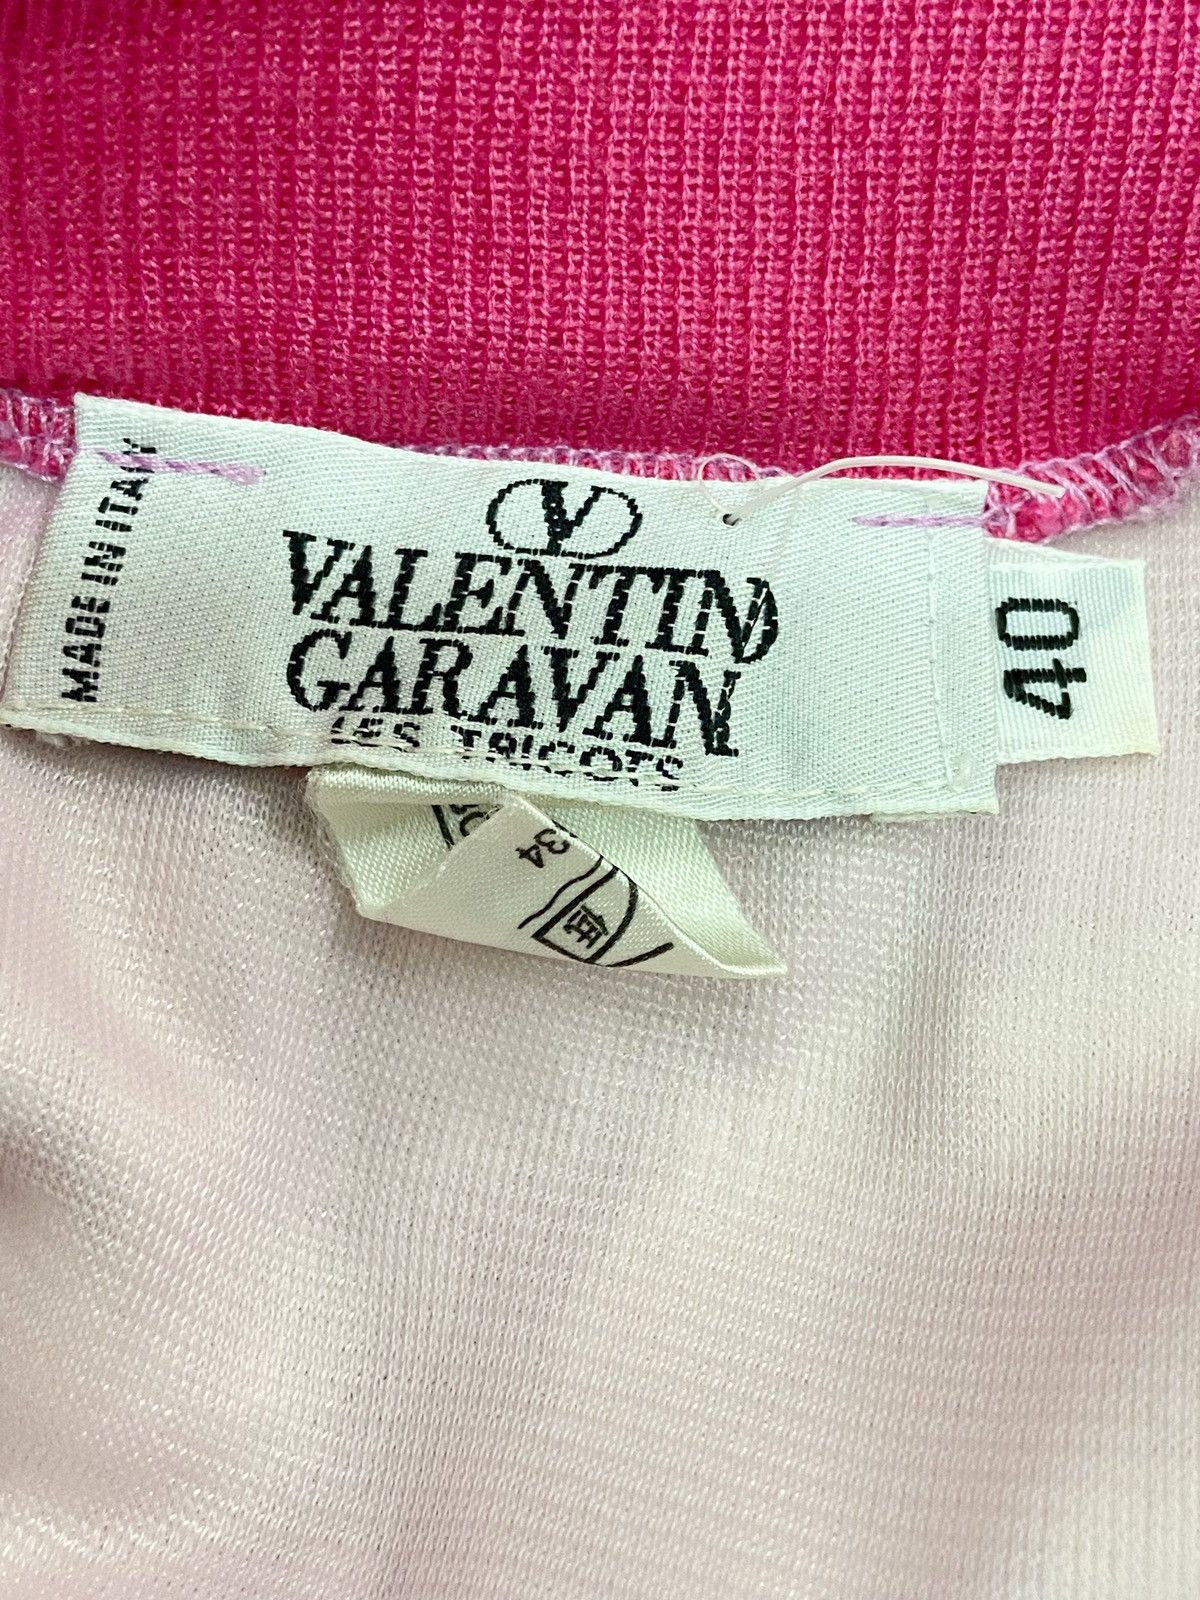 Valentino Garavani Short Skirt - 2